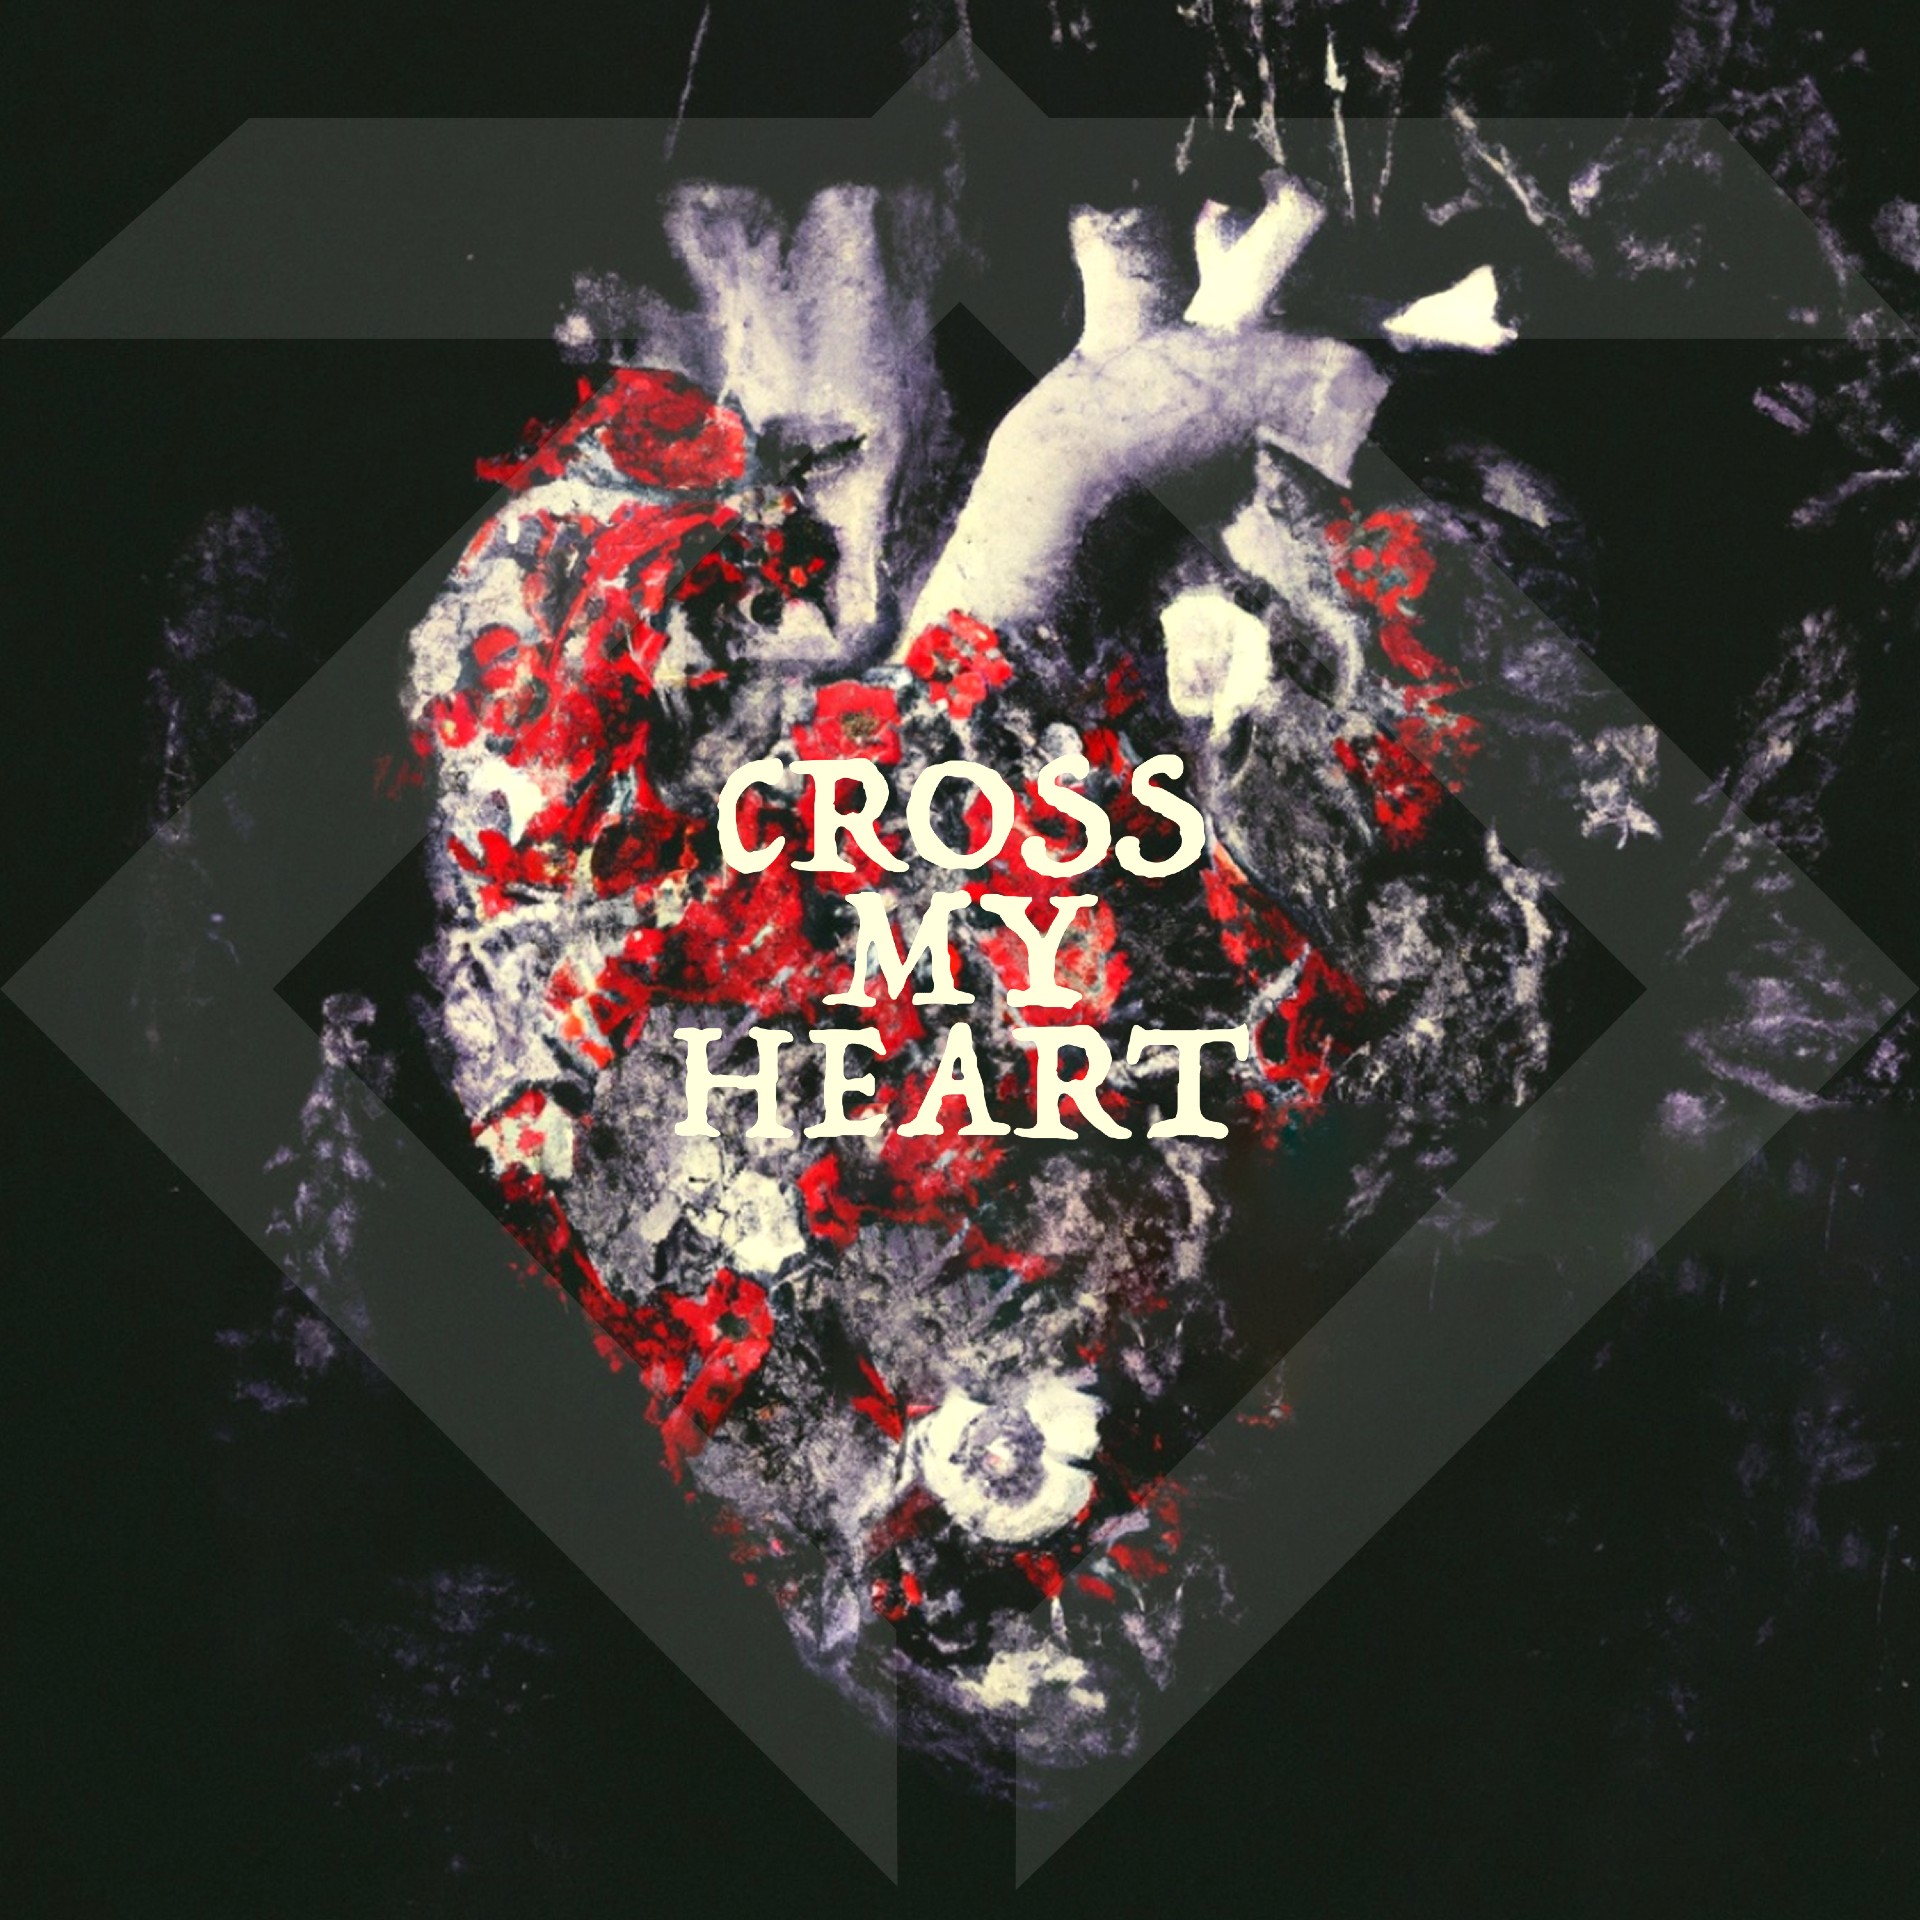 Trailer Swift “Cross My Heart” single artwork